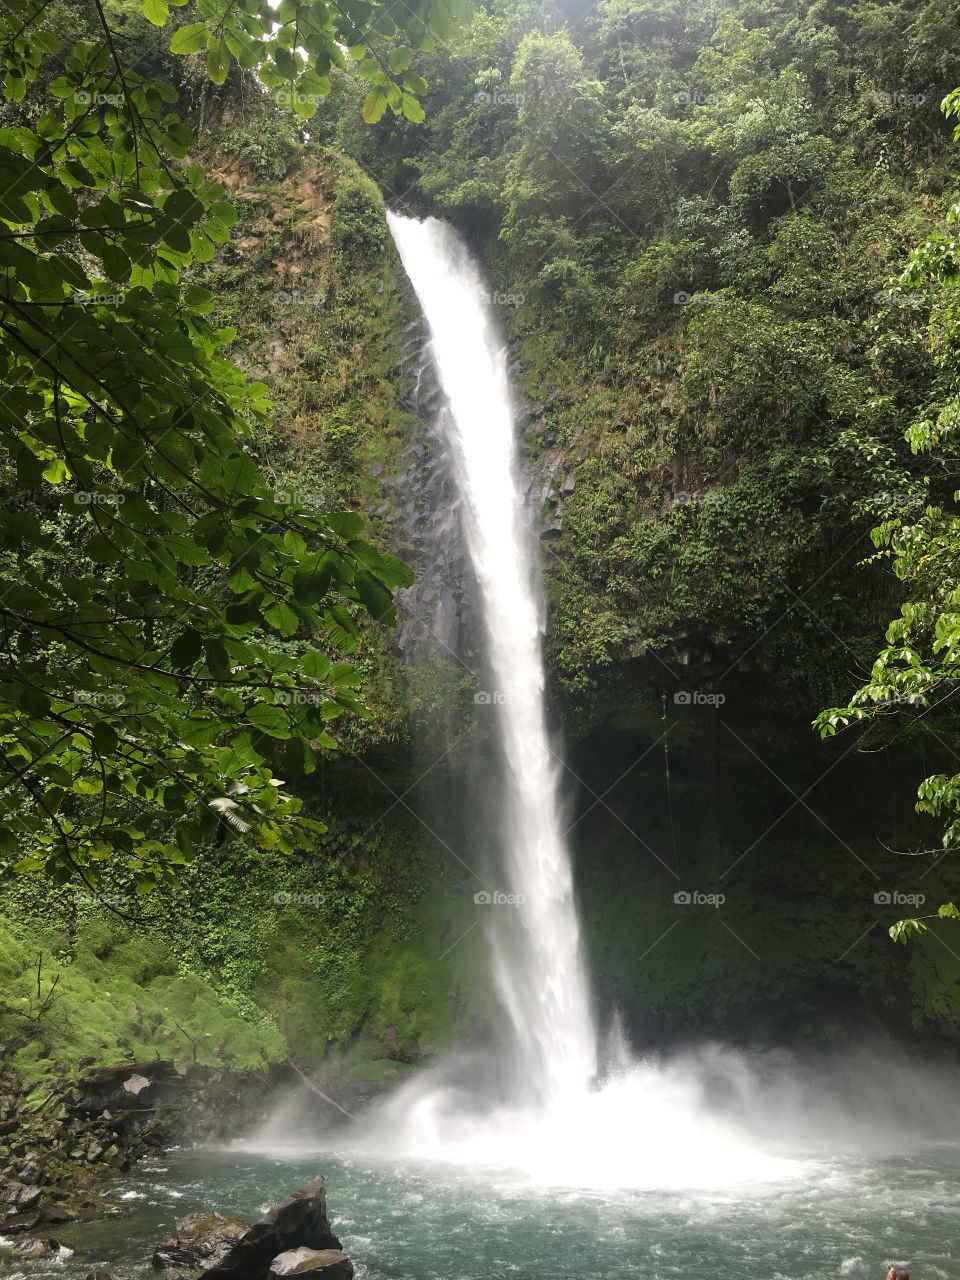 La Fortuna Waterfall, San Carlos, Costa Rica 